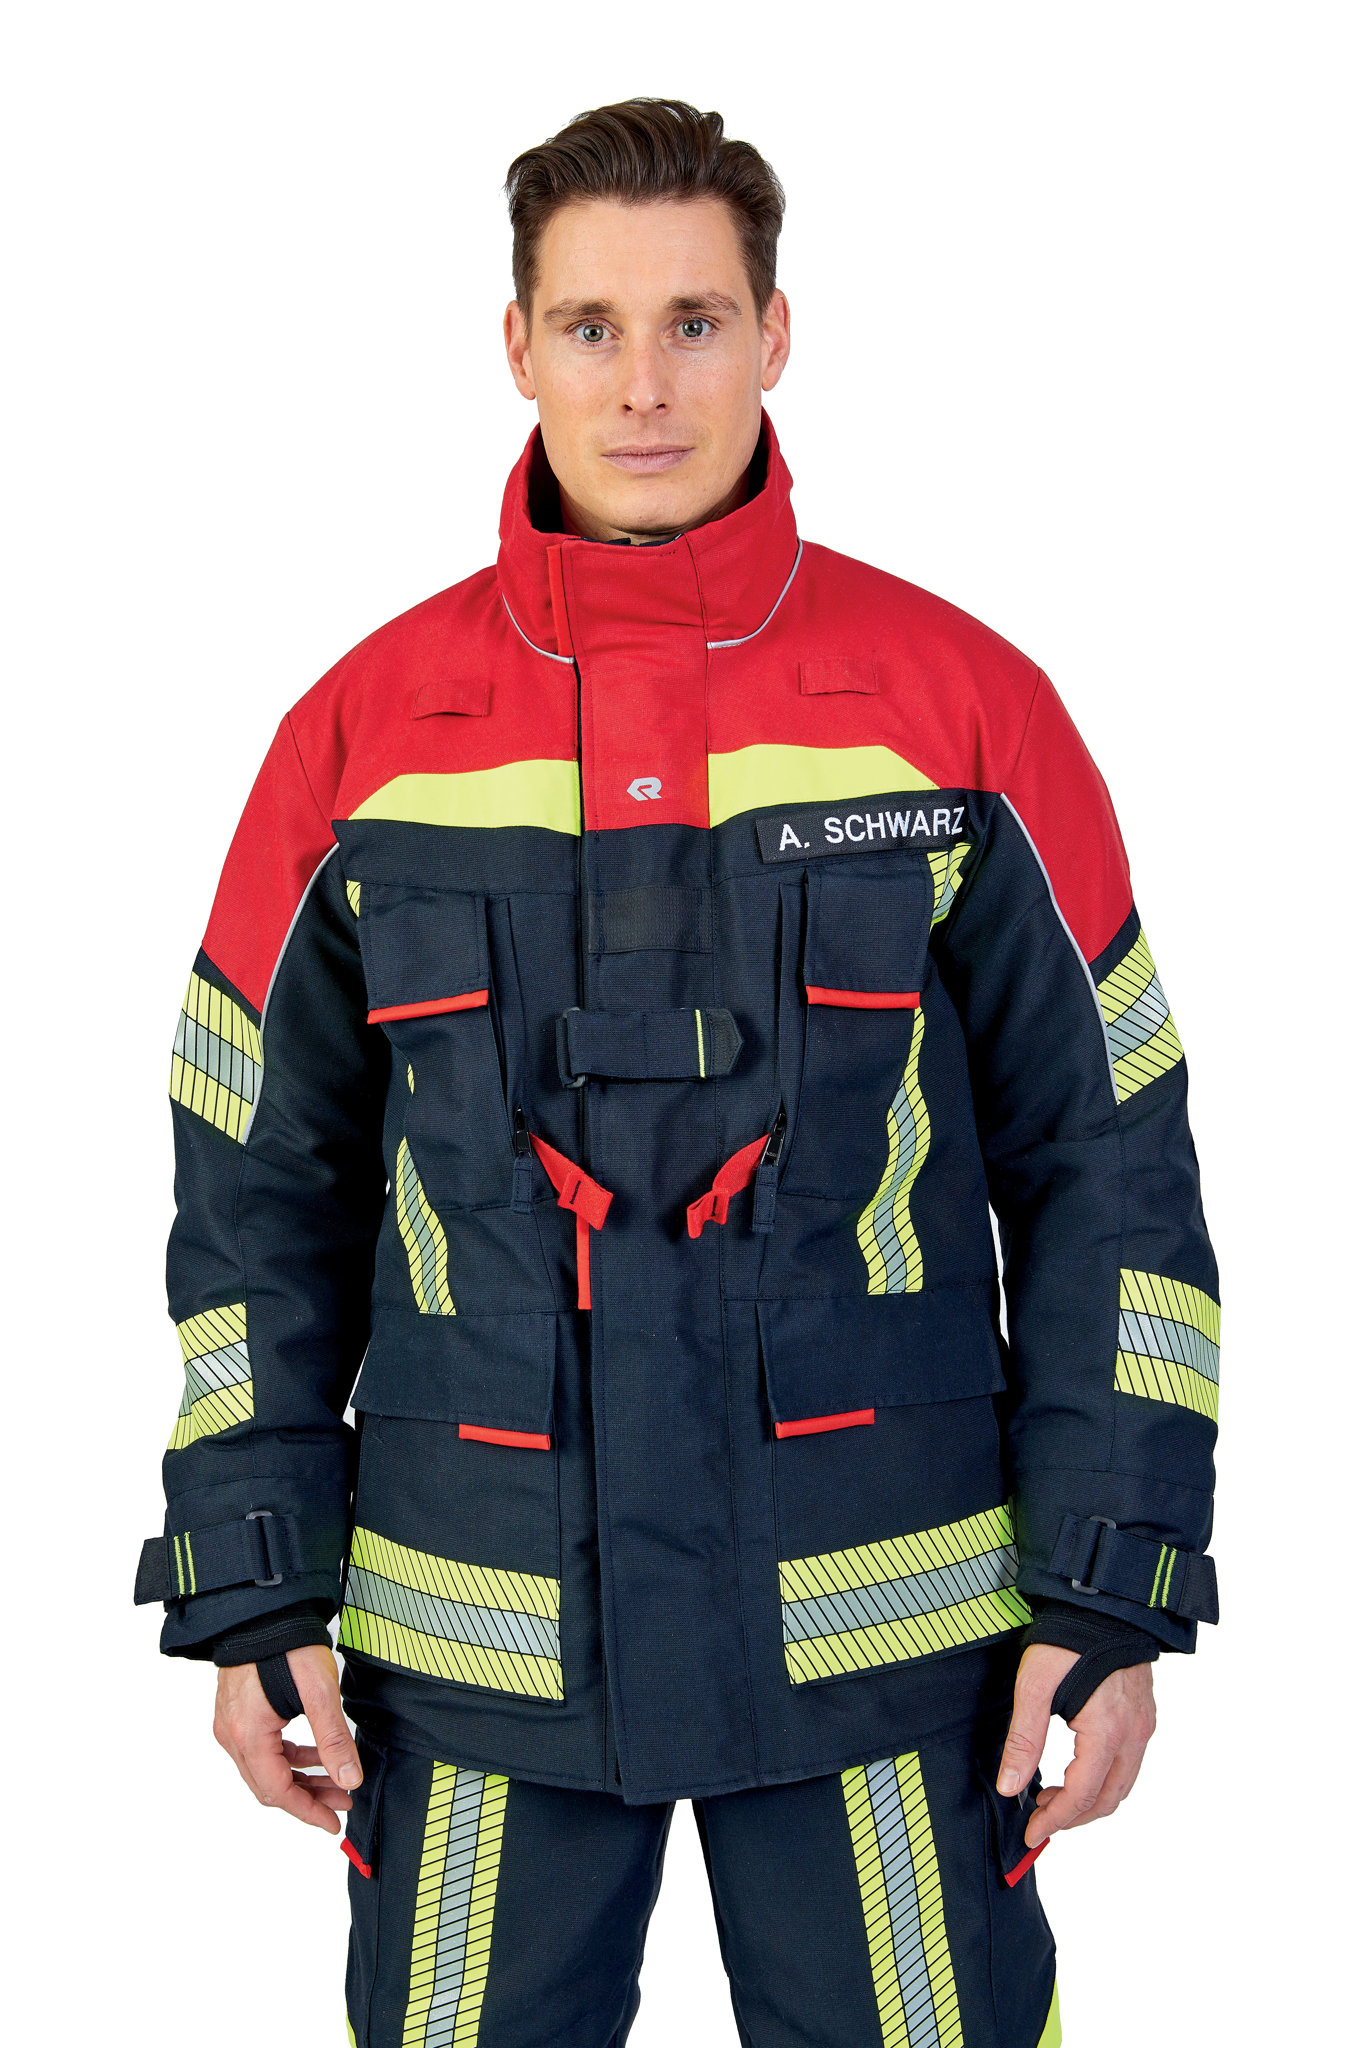 Bild von ROSENBAUER Feuerwehreinsatzjacke FIRE FLEX, NOMEX NXT, schwarzblau/rot, Gr. 44-46 E